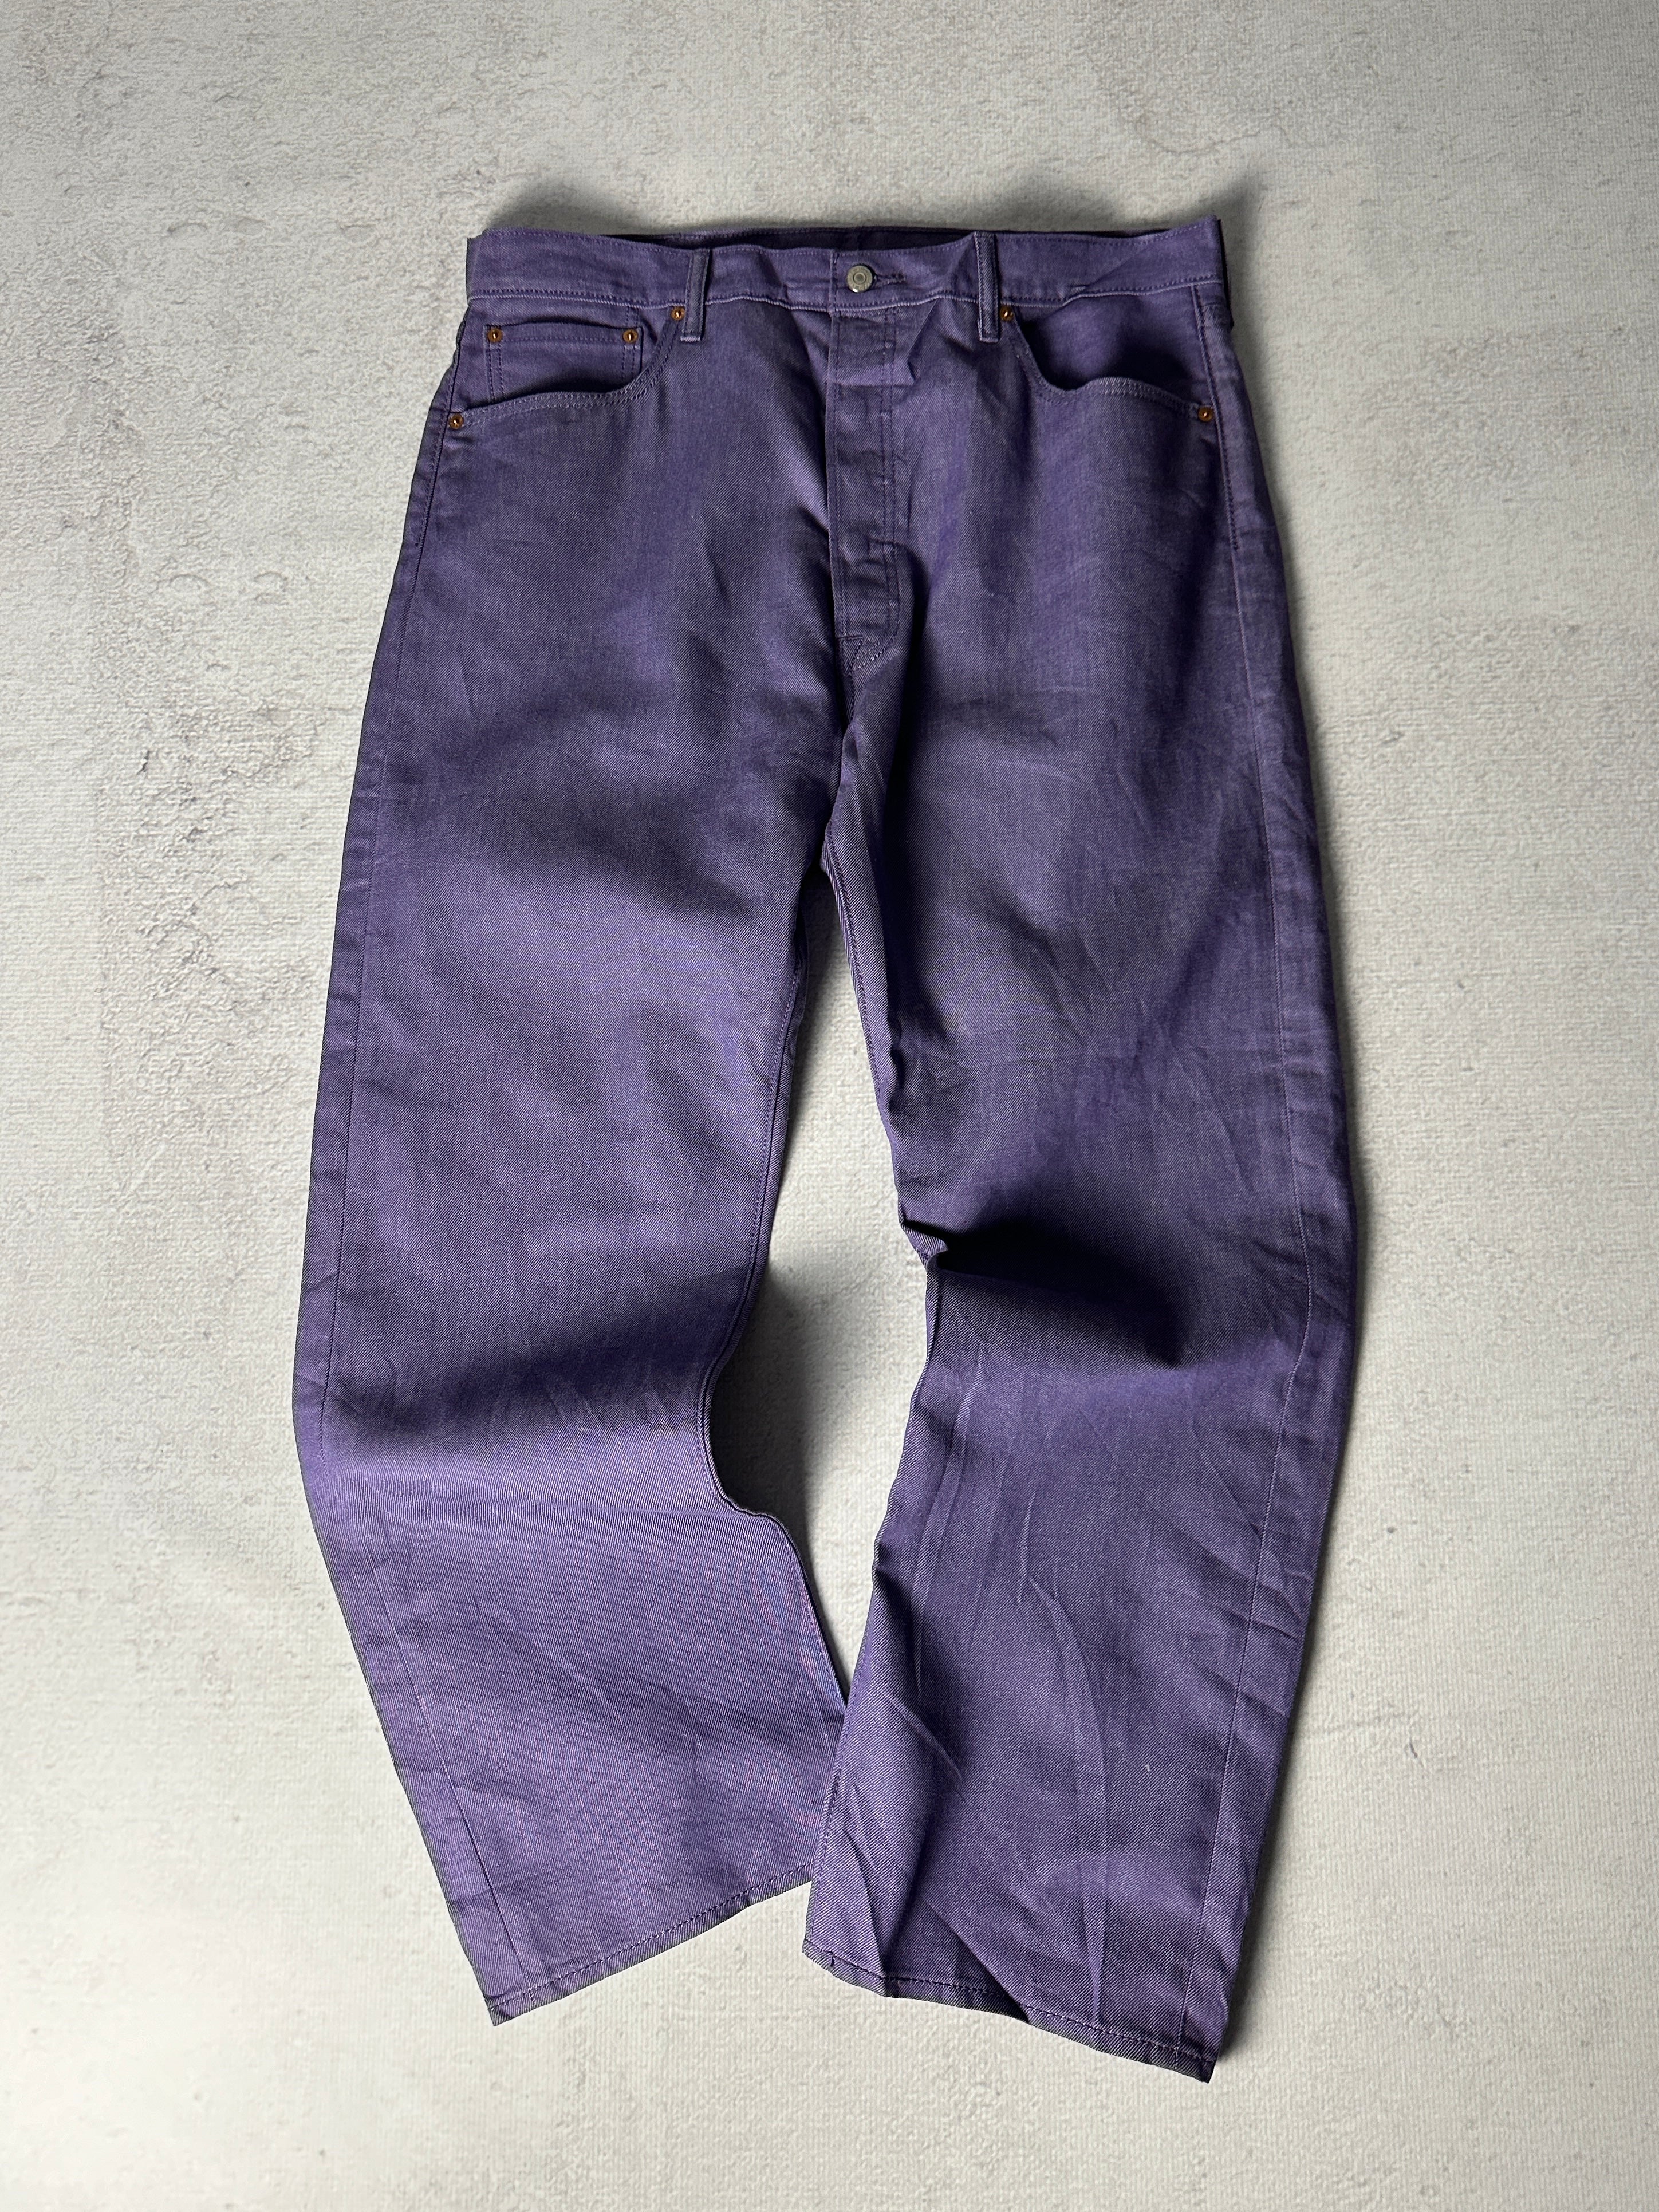 Vintage Levis 501 Jeans - Men's 38W30L